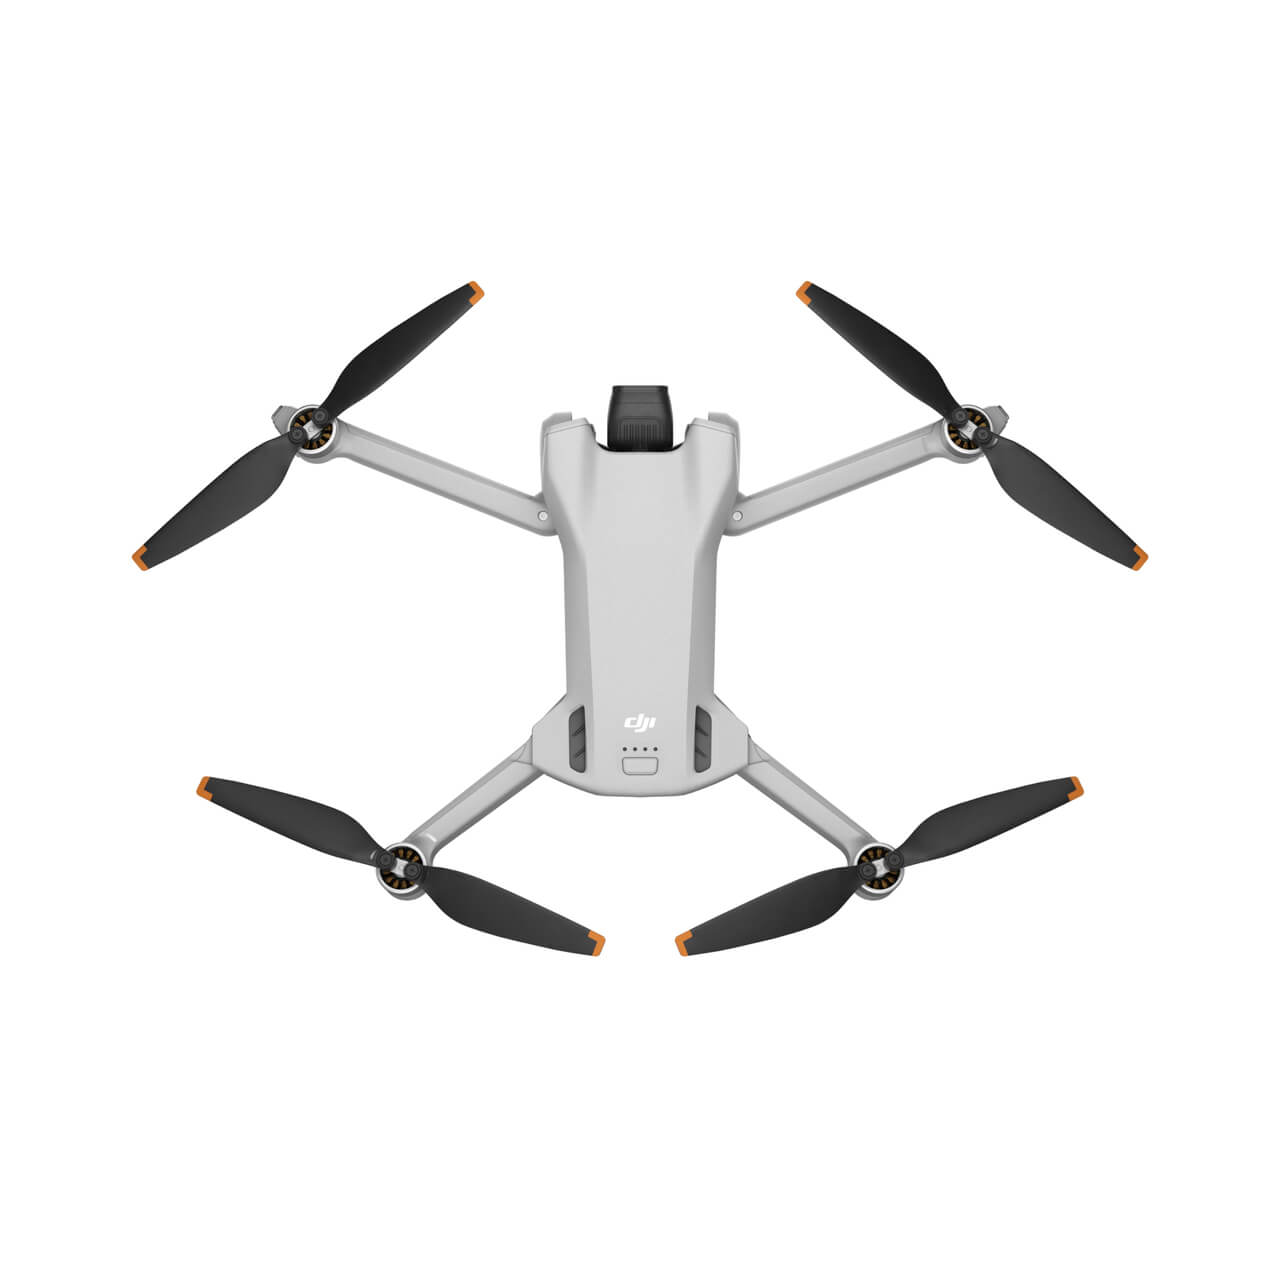 Droon DJI Mini 3 Fly More Combo (DJI RC)